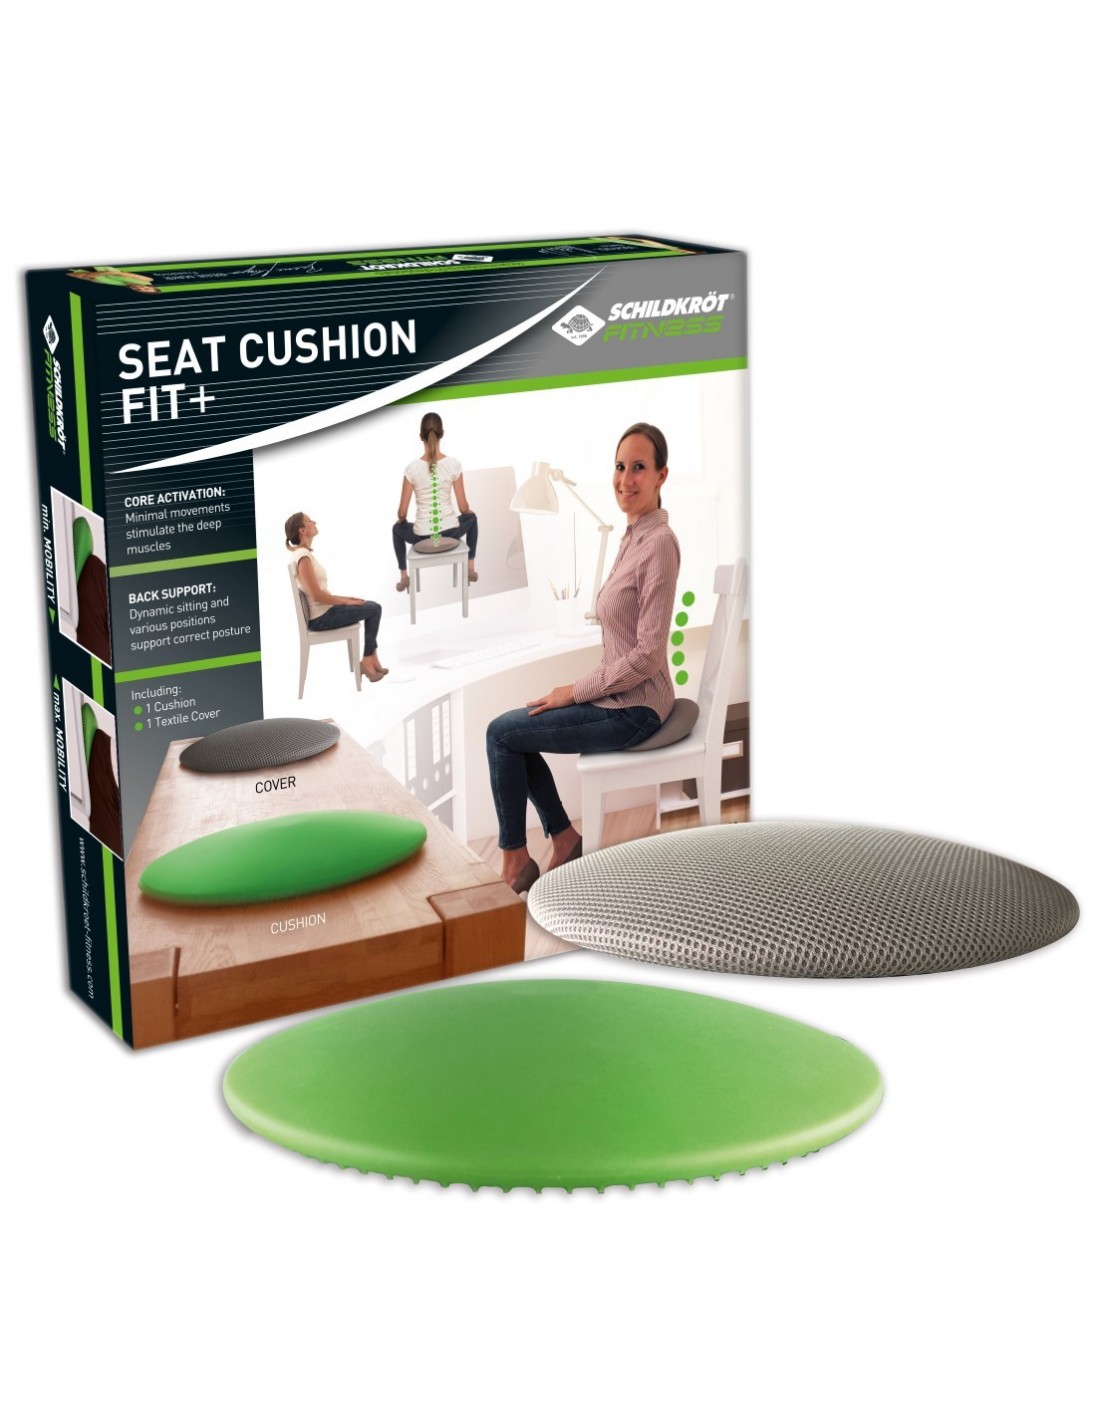 Schildkröt-Fitness Seat Cushion Fit+, inkl. Bezug, Handpumpe und Übungsposter von Schildkröt Fitness